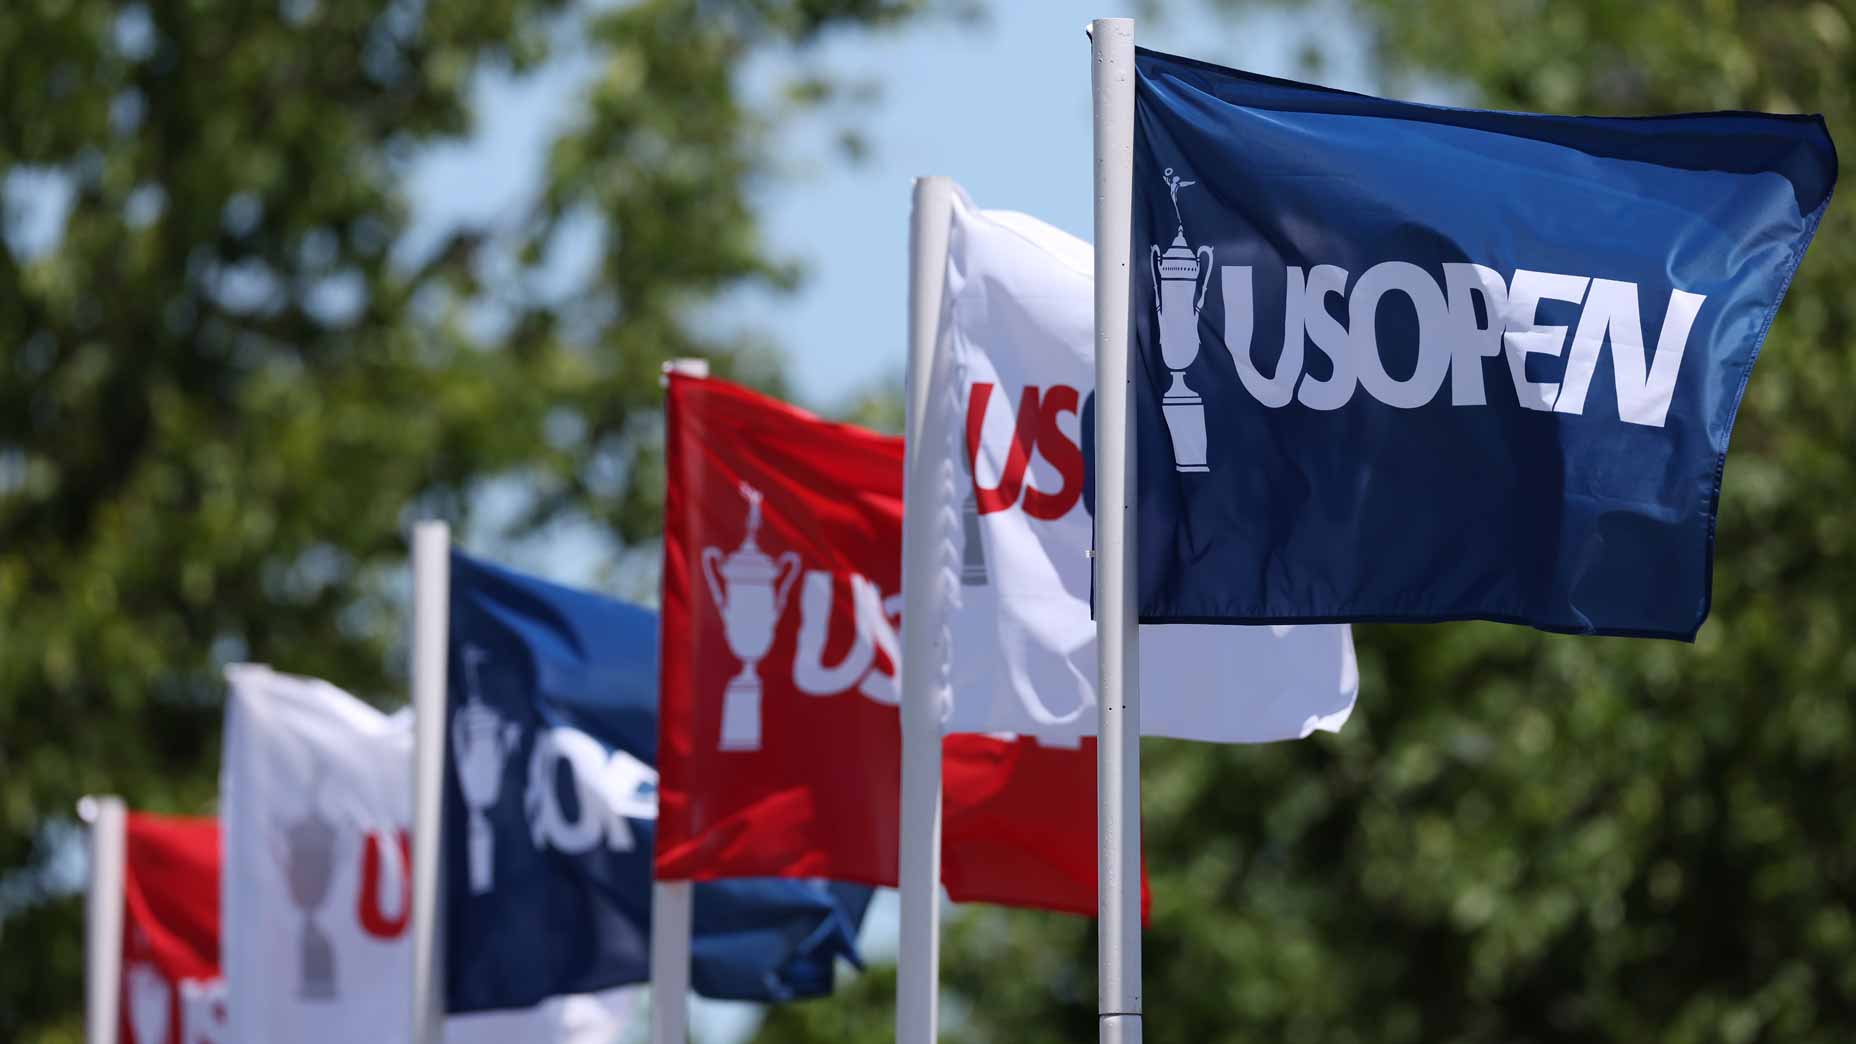 U.S. Open flags seen during practice at 2022 U.S. Open